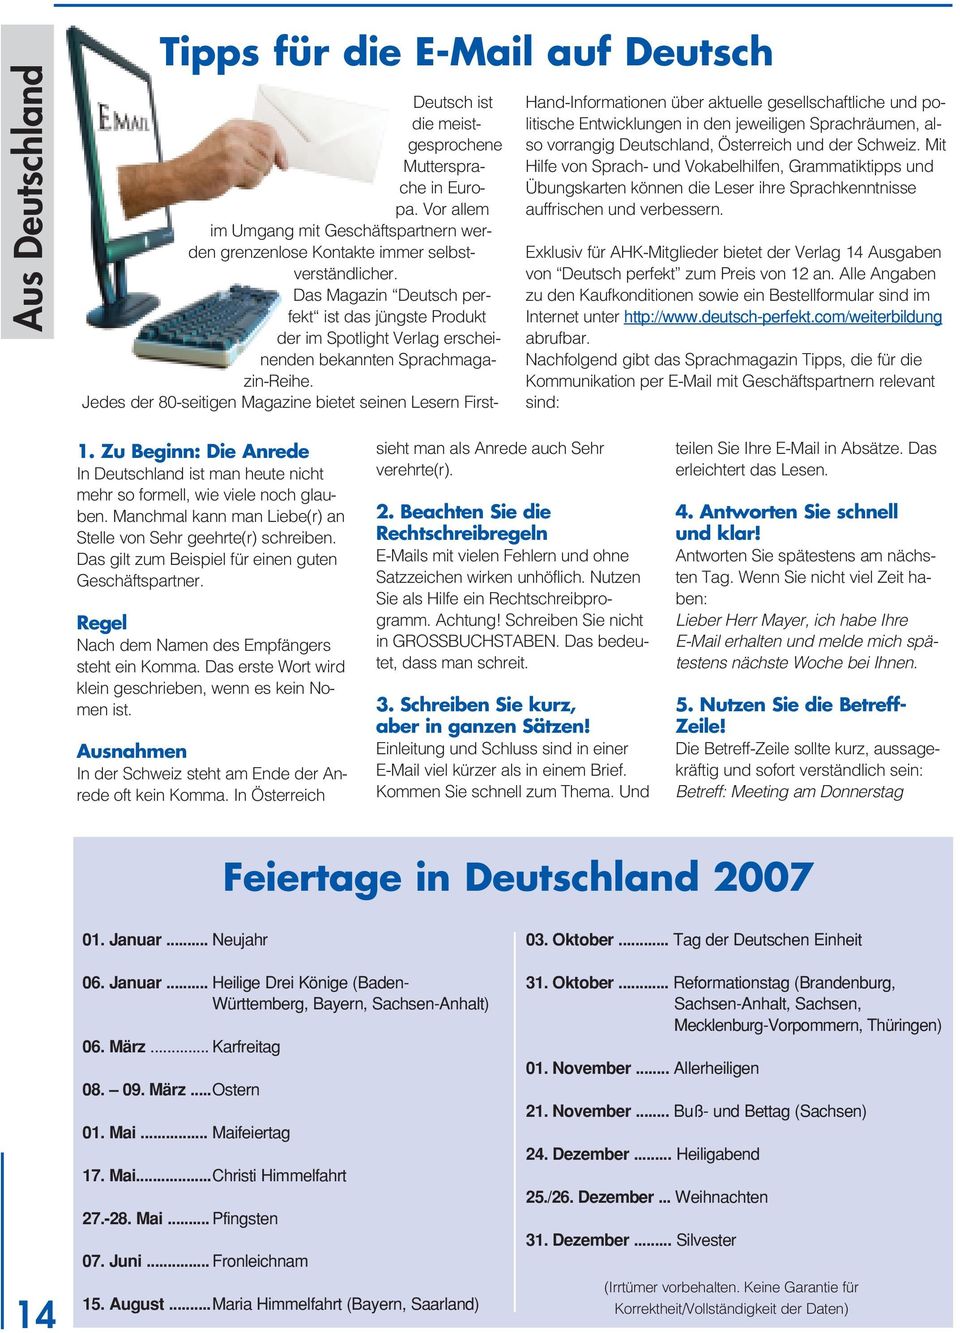 Das Magazin Deutsch perfekt ist das jüngste Produkt der im Spotlight Verlag erscheinenden bekannten Sprachmagazin-Reihe.